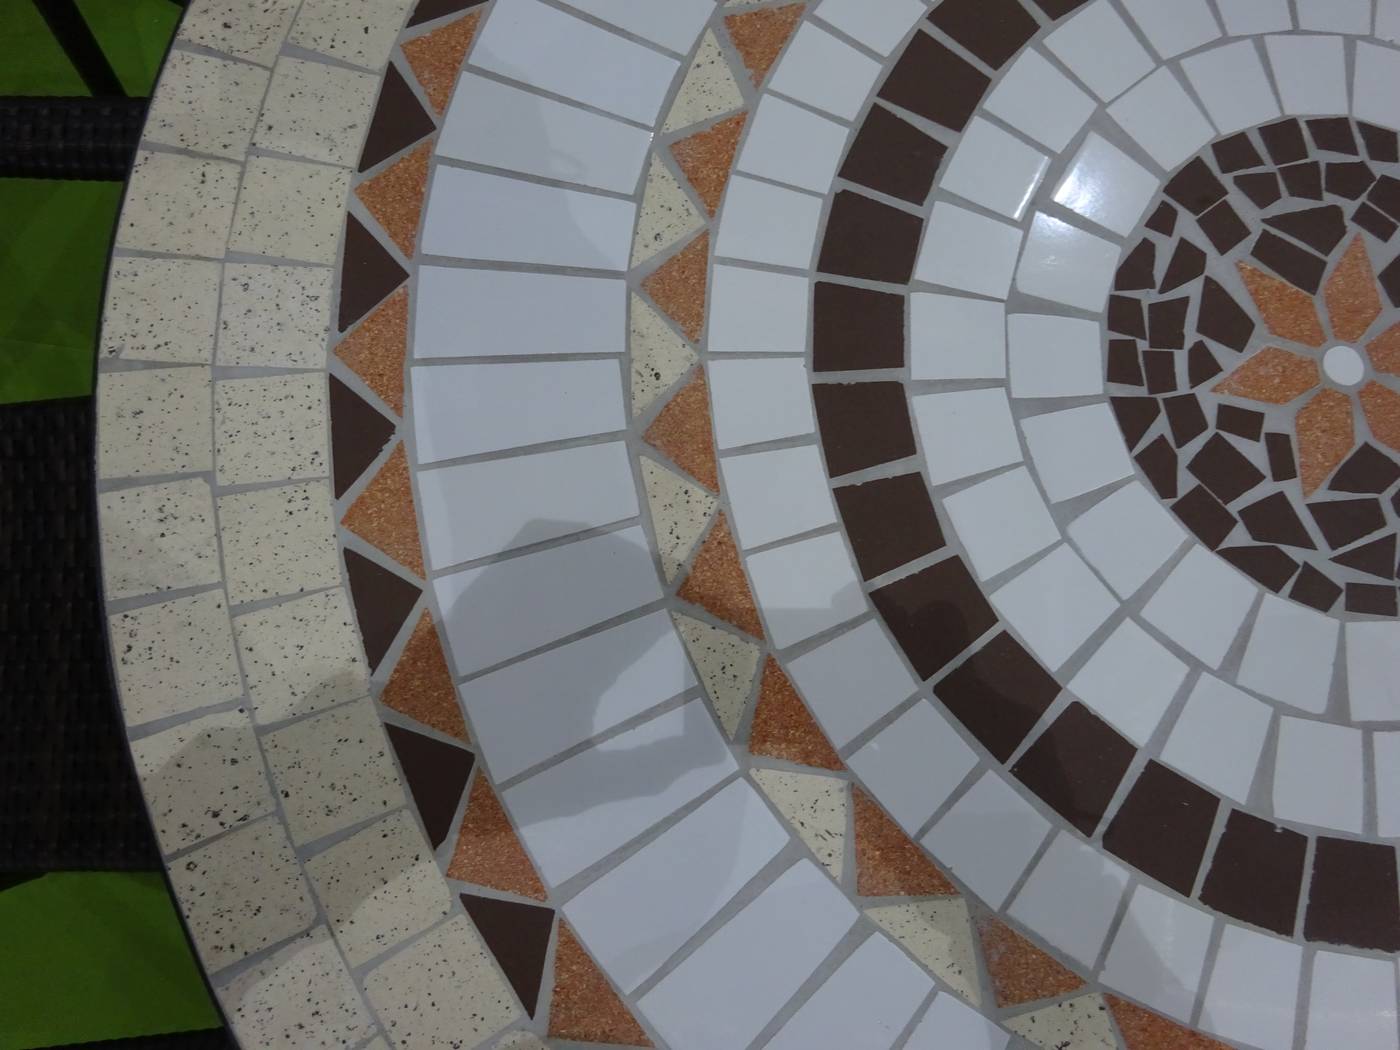 Mesa Mosaico Nabil-140 - Mesa mosaico redonda para jardín. Estructura de acero forjado con patas reforzadas y panel de mosaico